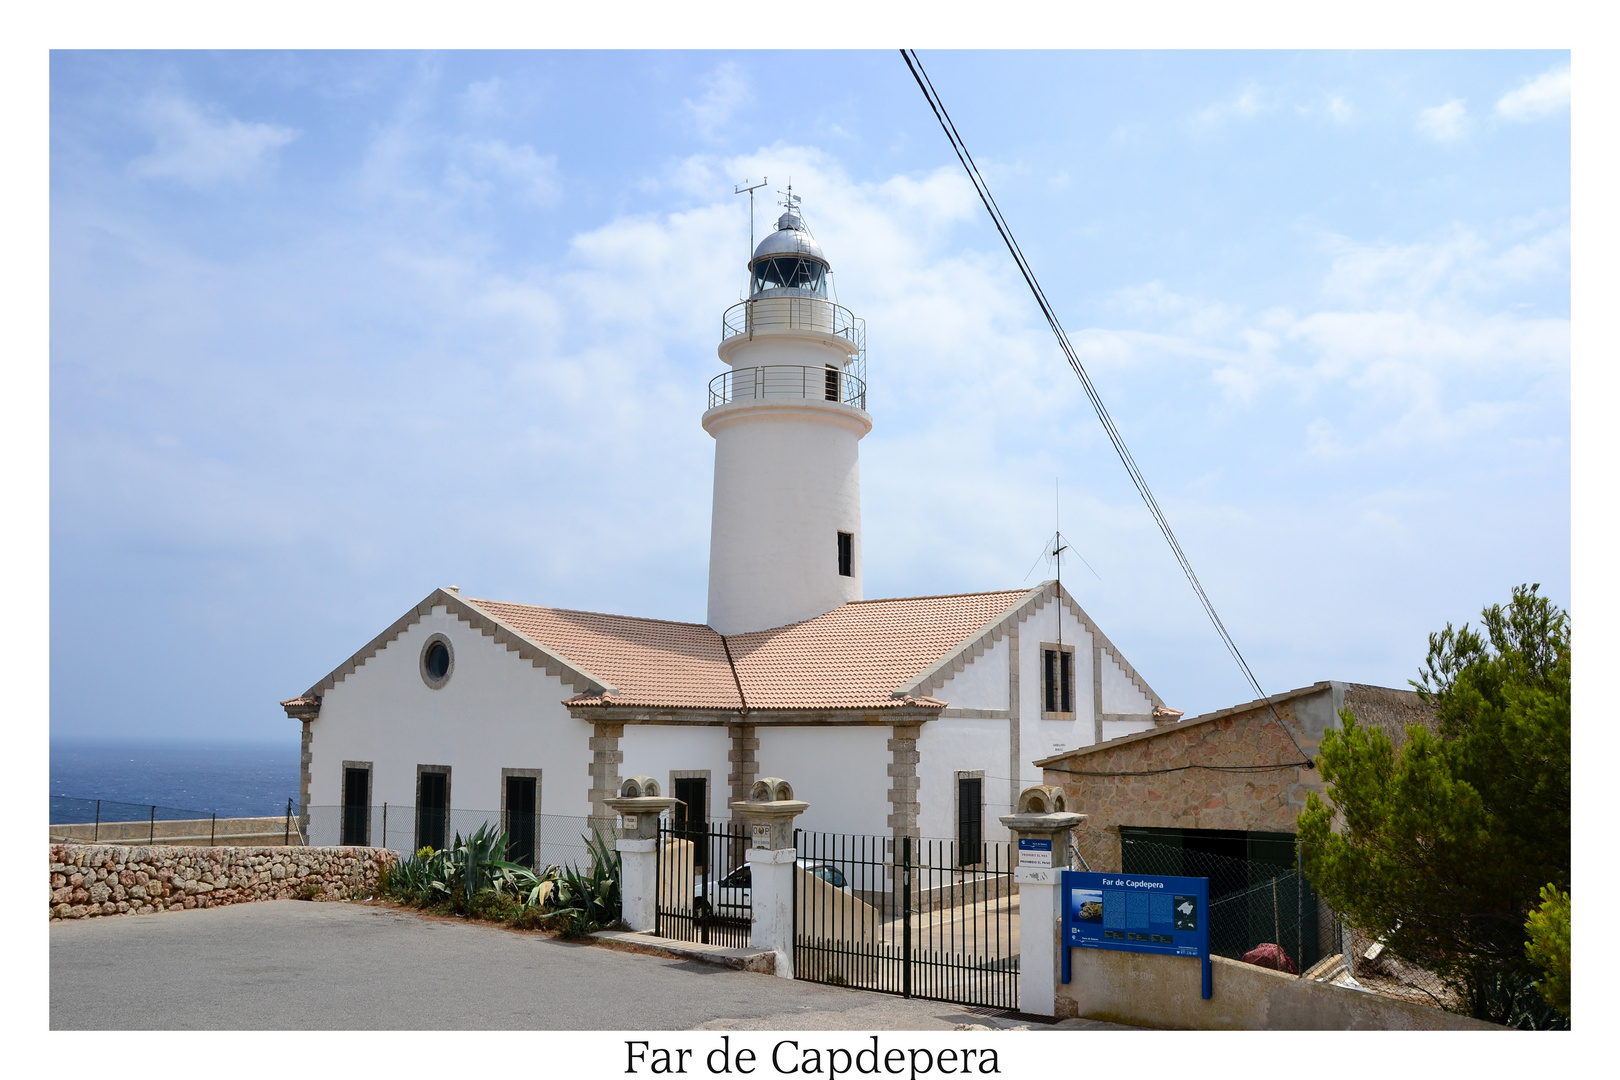 Far de Capdepera in Cala Ratjada